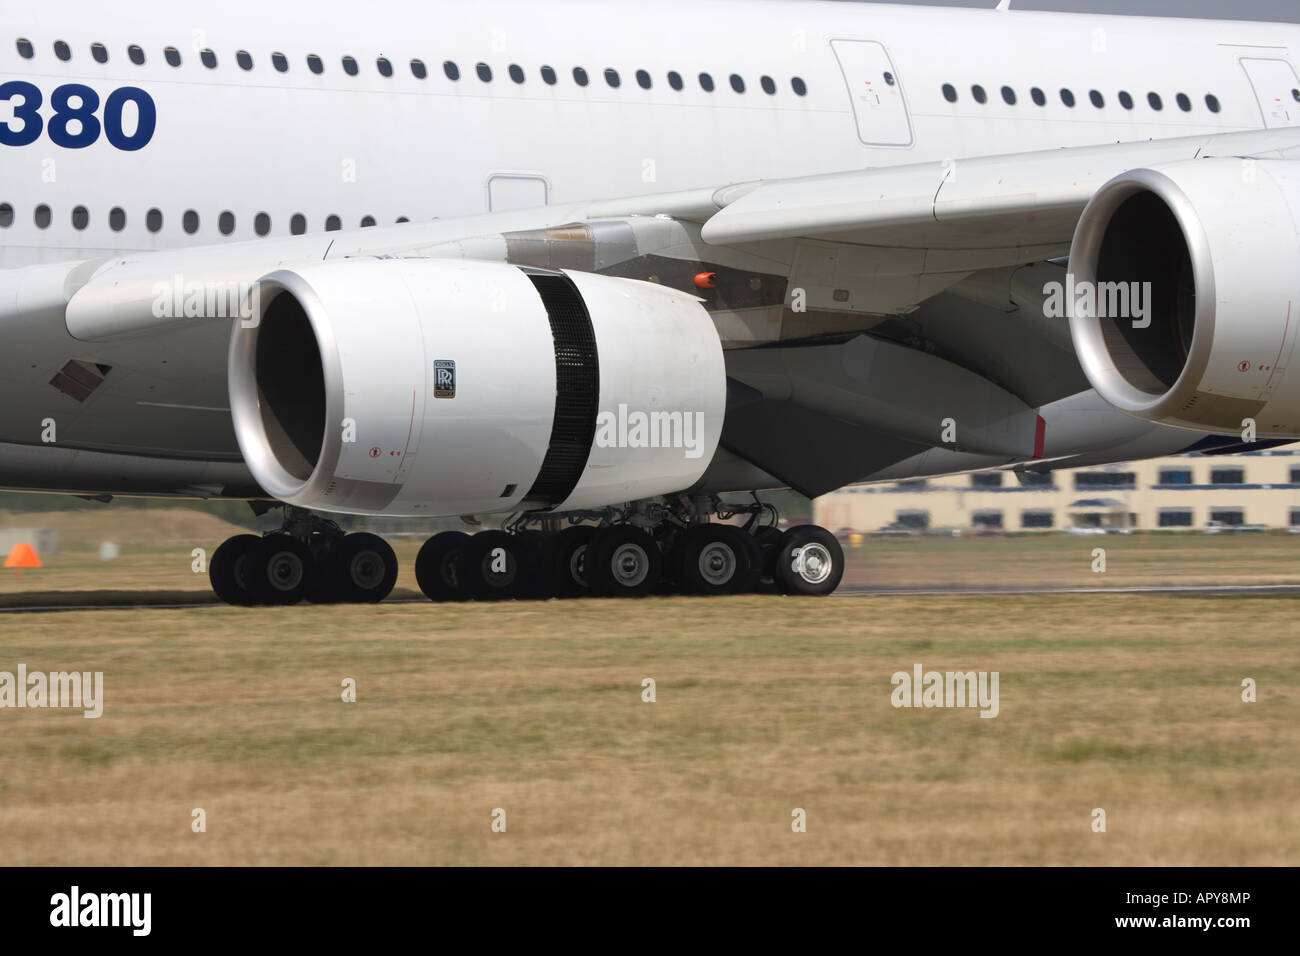 Airbus A380 Nouveau superjumbo technologie de pointe plus grand avion de passagers dans le monde ciel bleu Banque D'Images